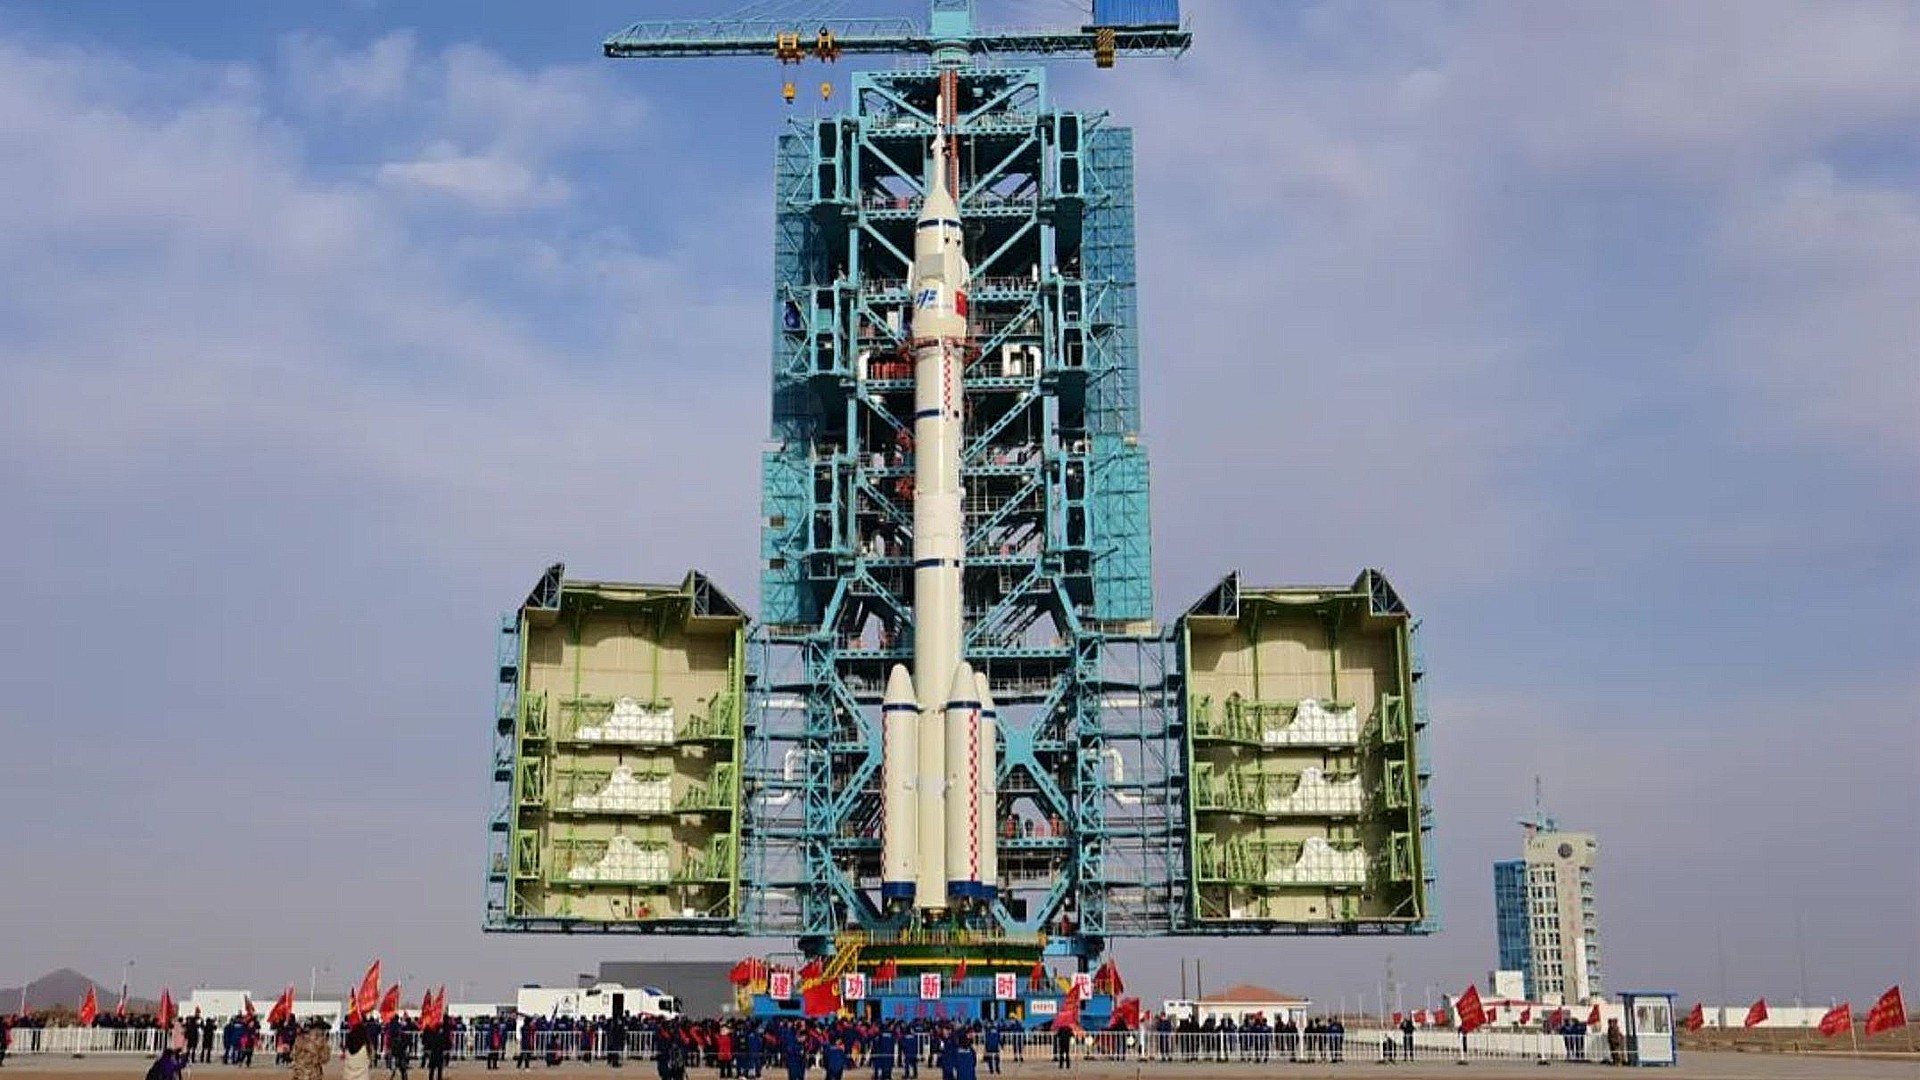 Watch China launch Shenzhou 15 astronauts to Tiangong space station Tuesday